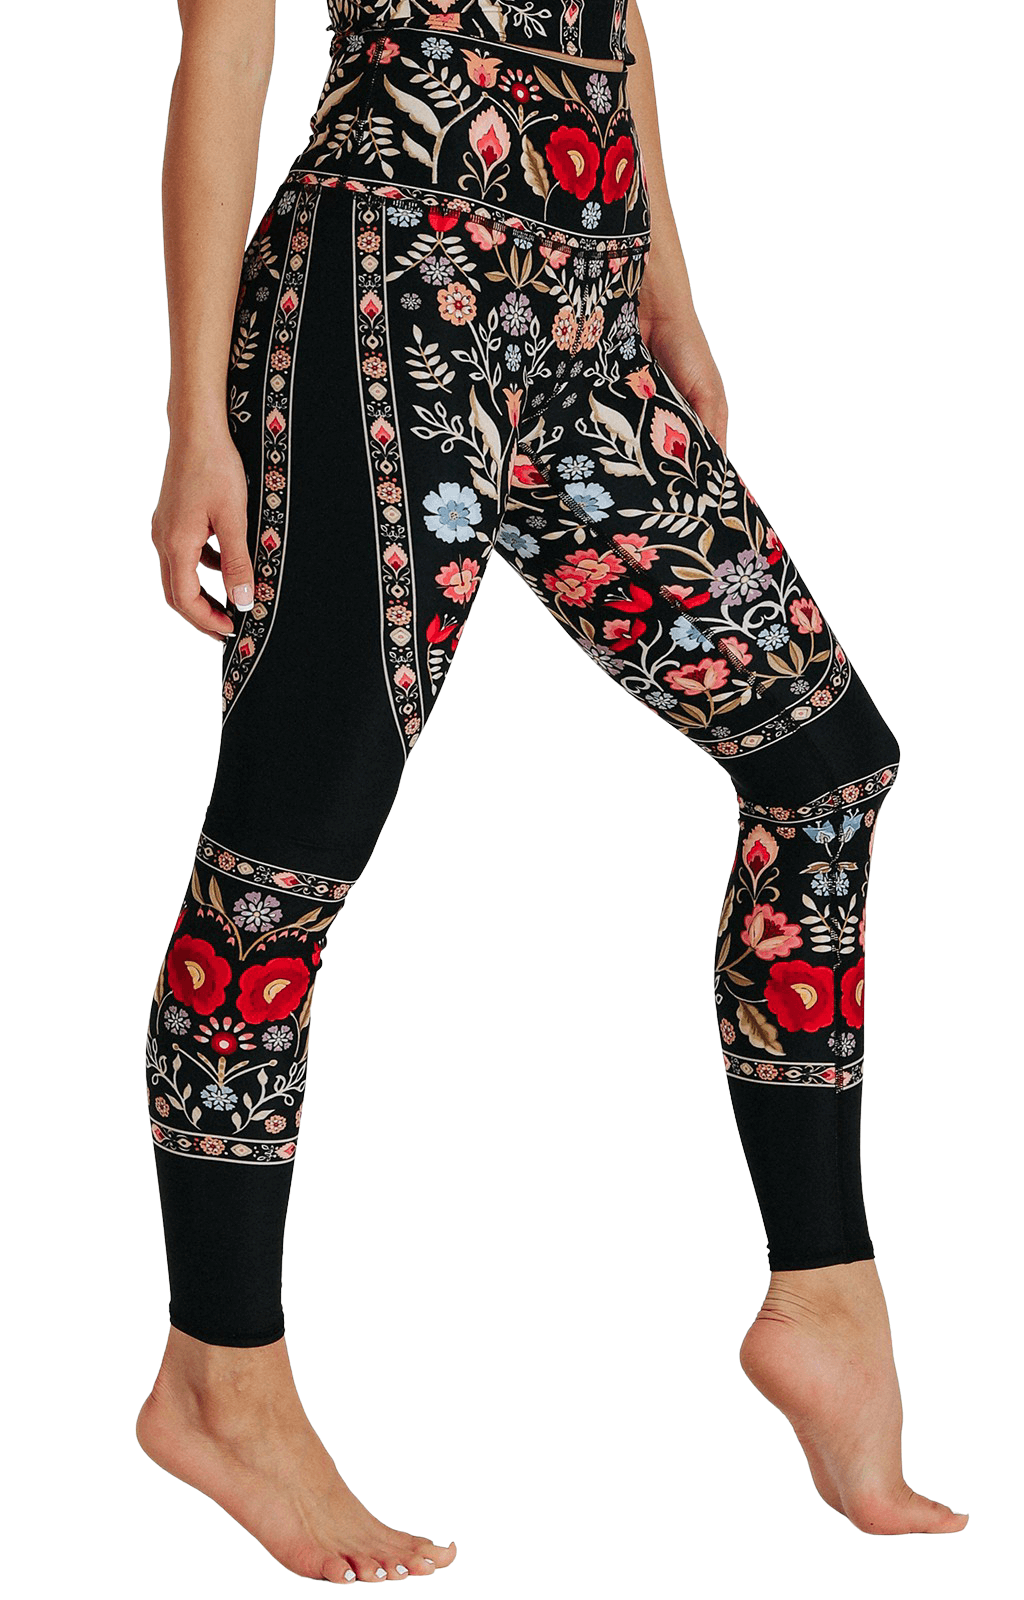 Rustica Printed Yoga Leggings Right